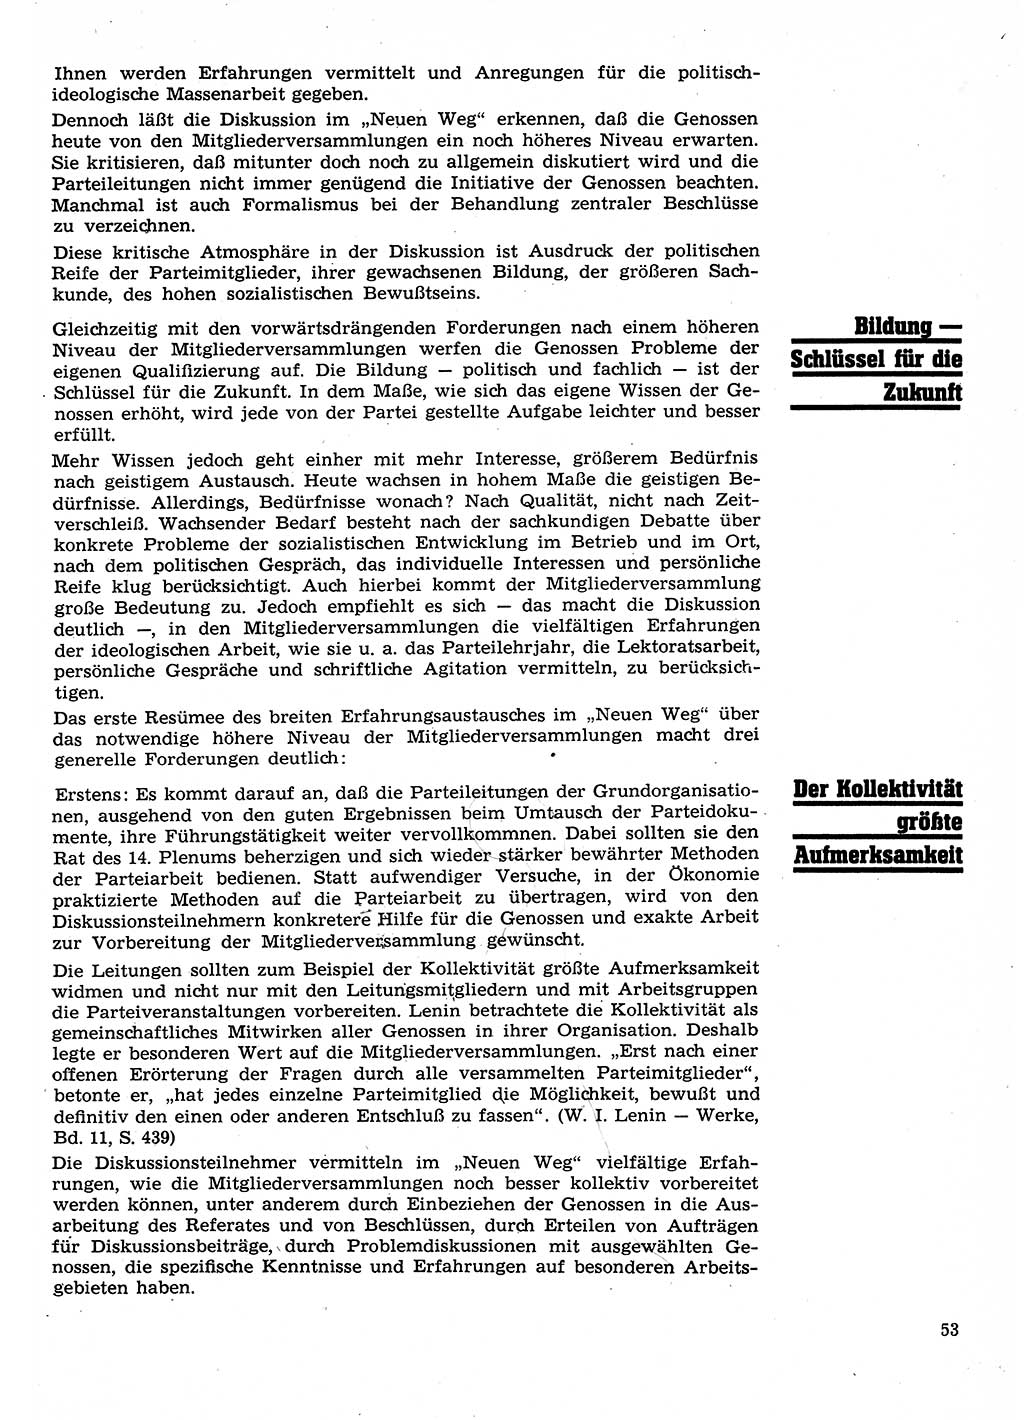 Neuer Weg (NW), Organ des Zentralkomitees (ZK) der SED (Sozialistische Einheitspartei Deutschlands) für Fragen des Parteilebens, 26. Jahrgang [Deutsche Demokratische Republik (DDR)] 1971, Seite 53 (NW ZK SED DDR 1971, S. 53)